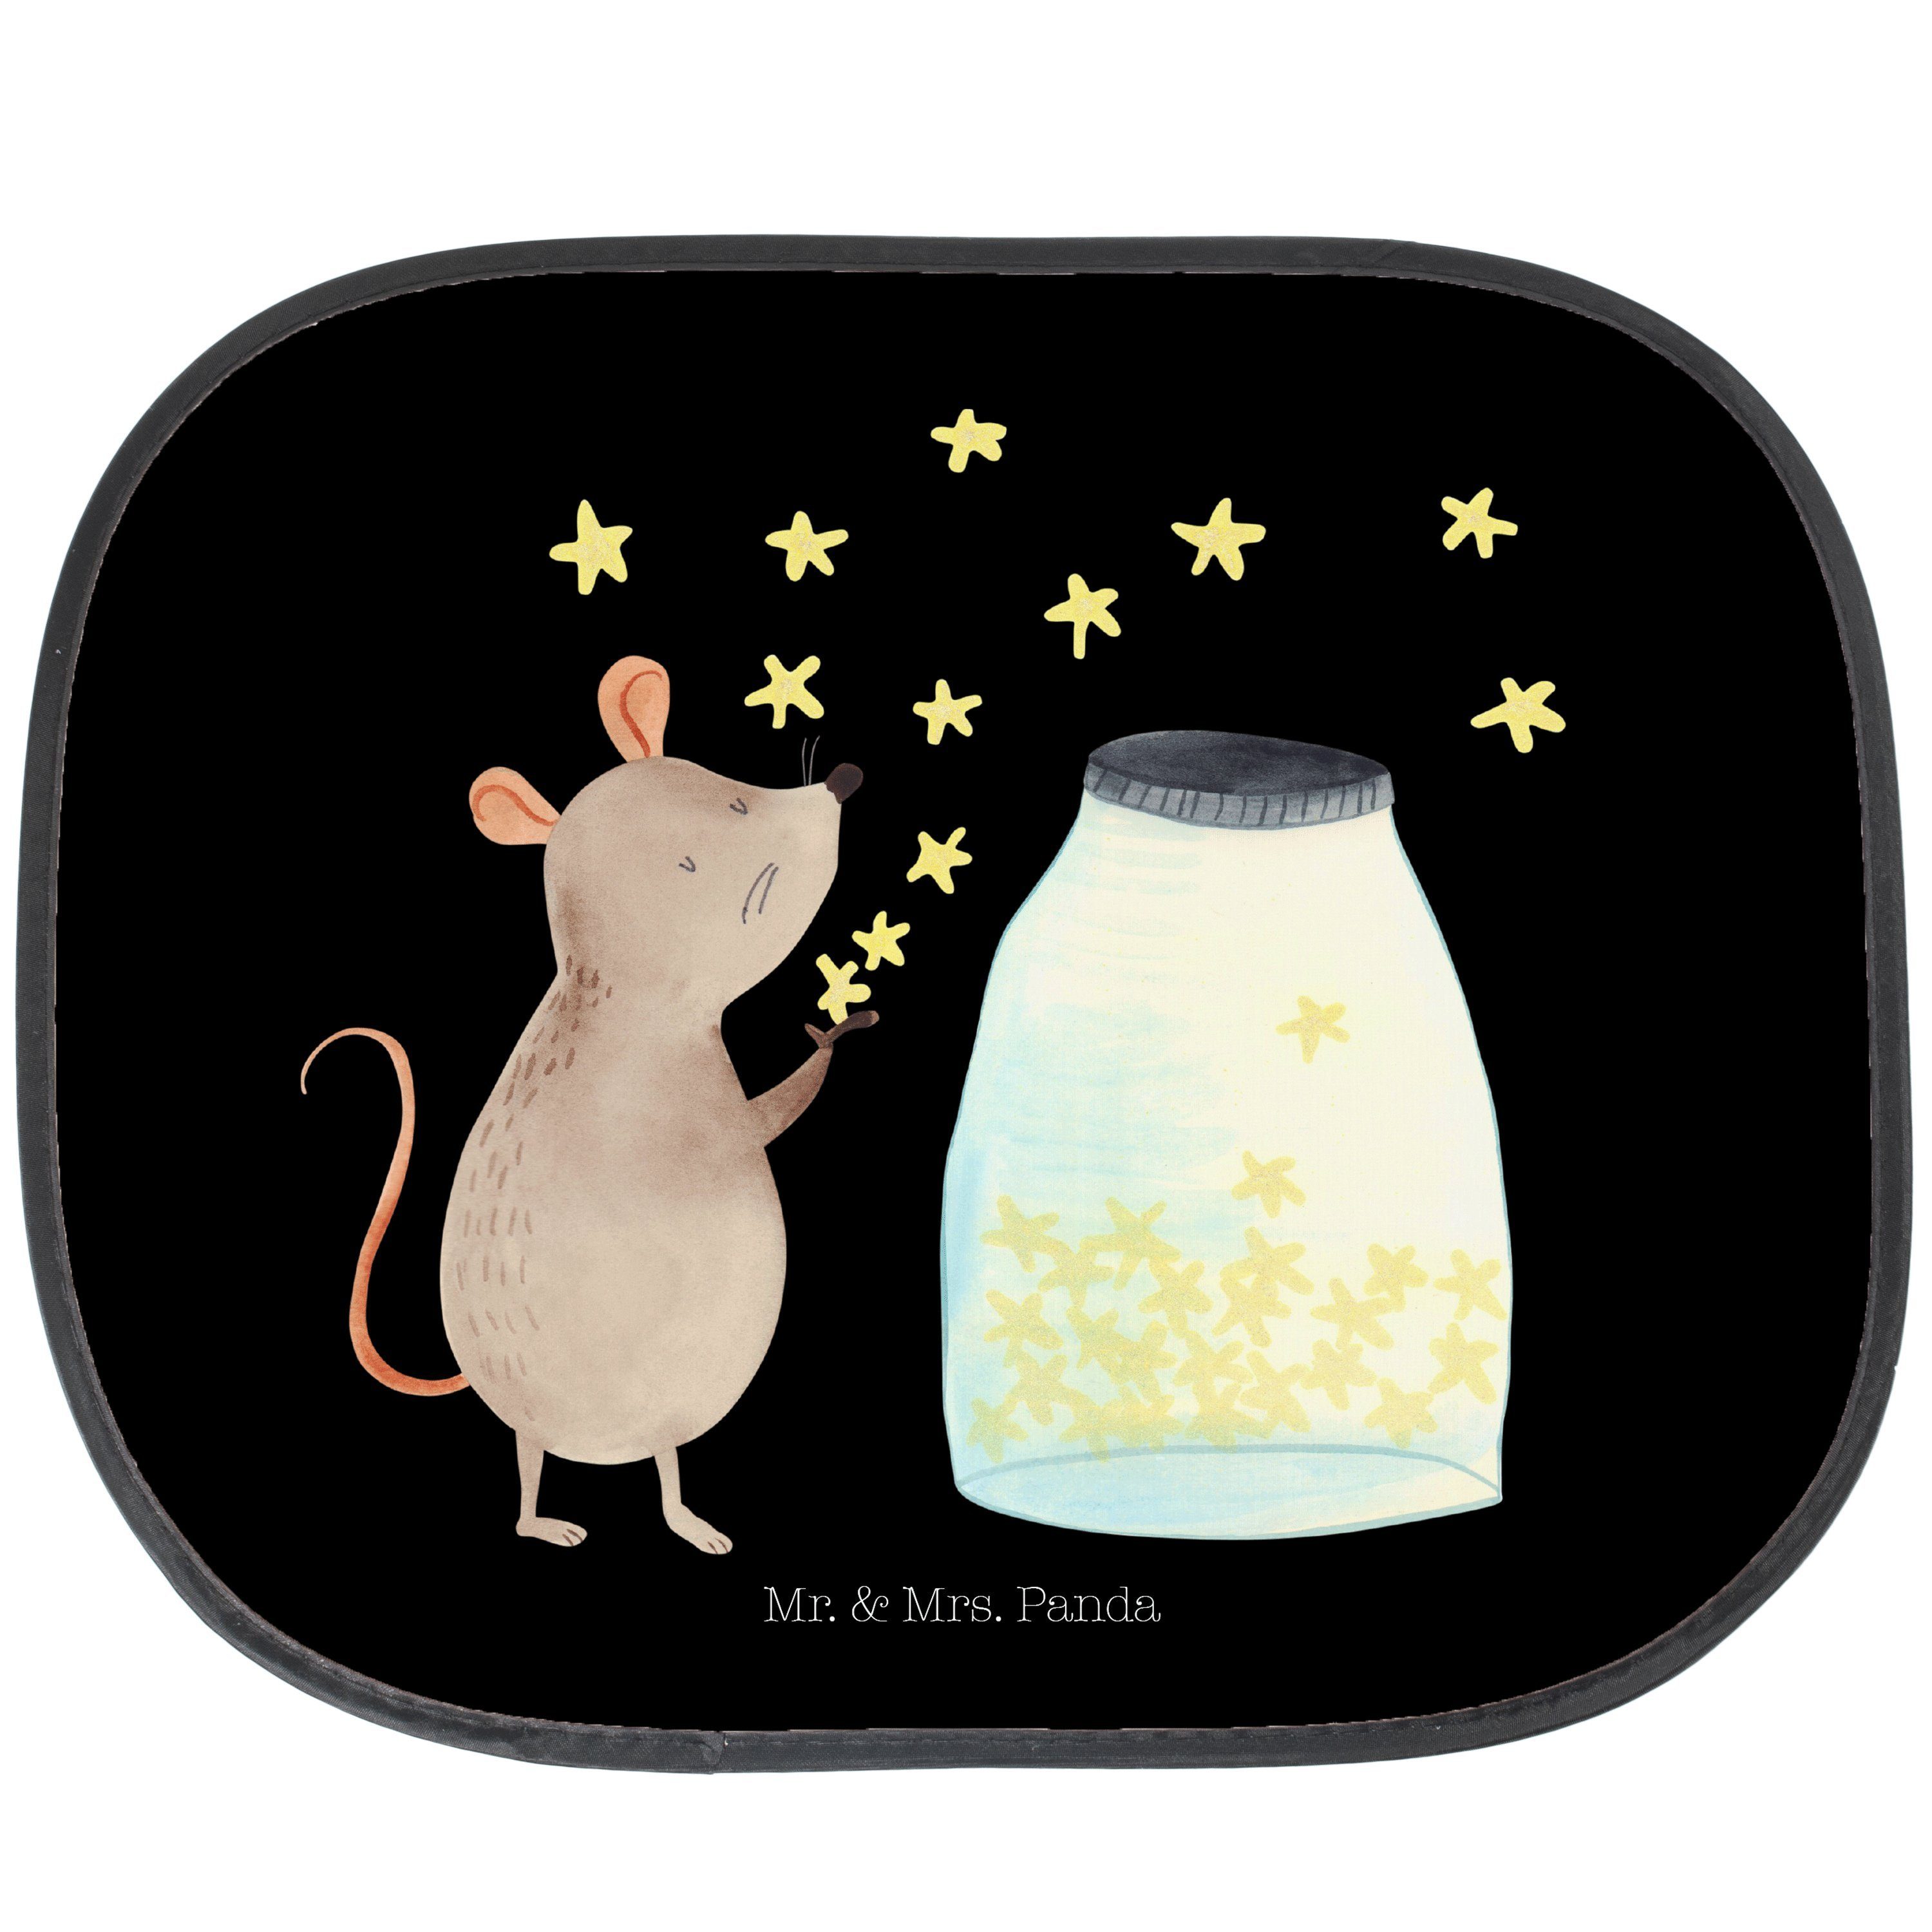 Sonnenschutz Maus Sterne - Schwarz - Geschenk, lustige Sprüche, Sonne, Sonnenschut, Mr. & Mrs. Panda, Seidenmatt | Fensterfolien